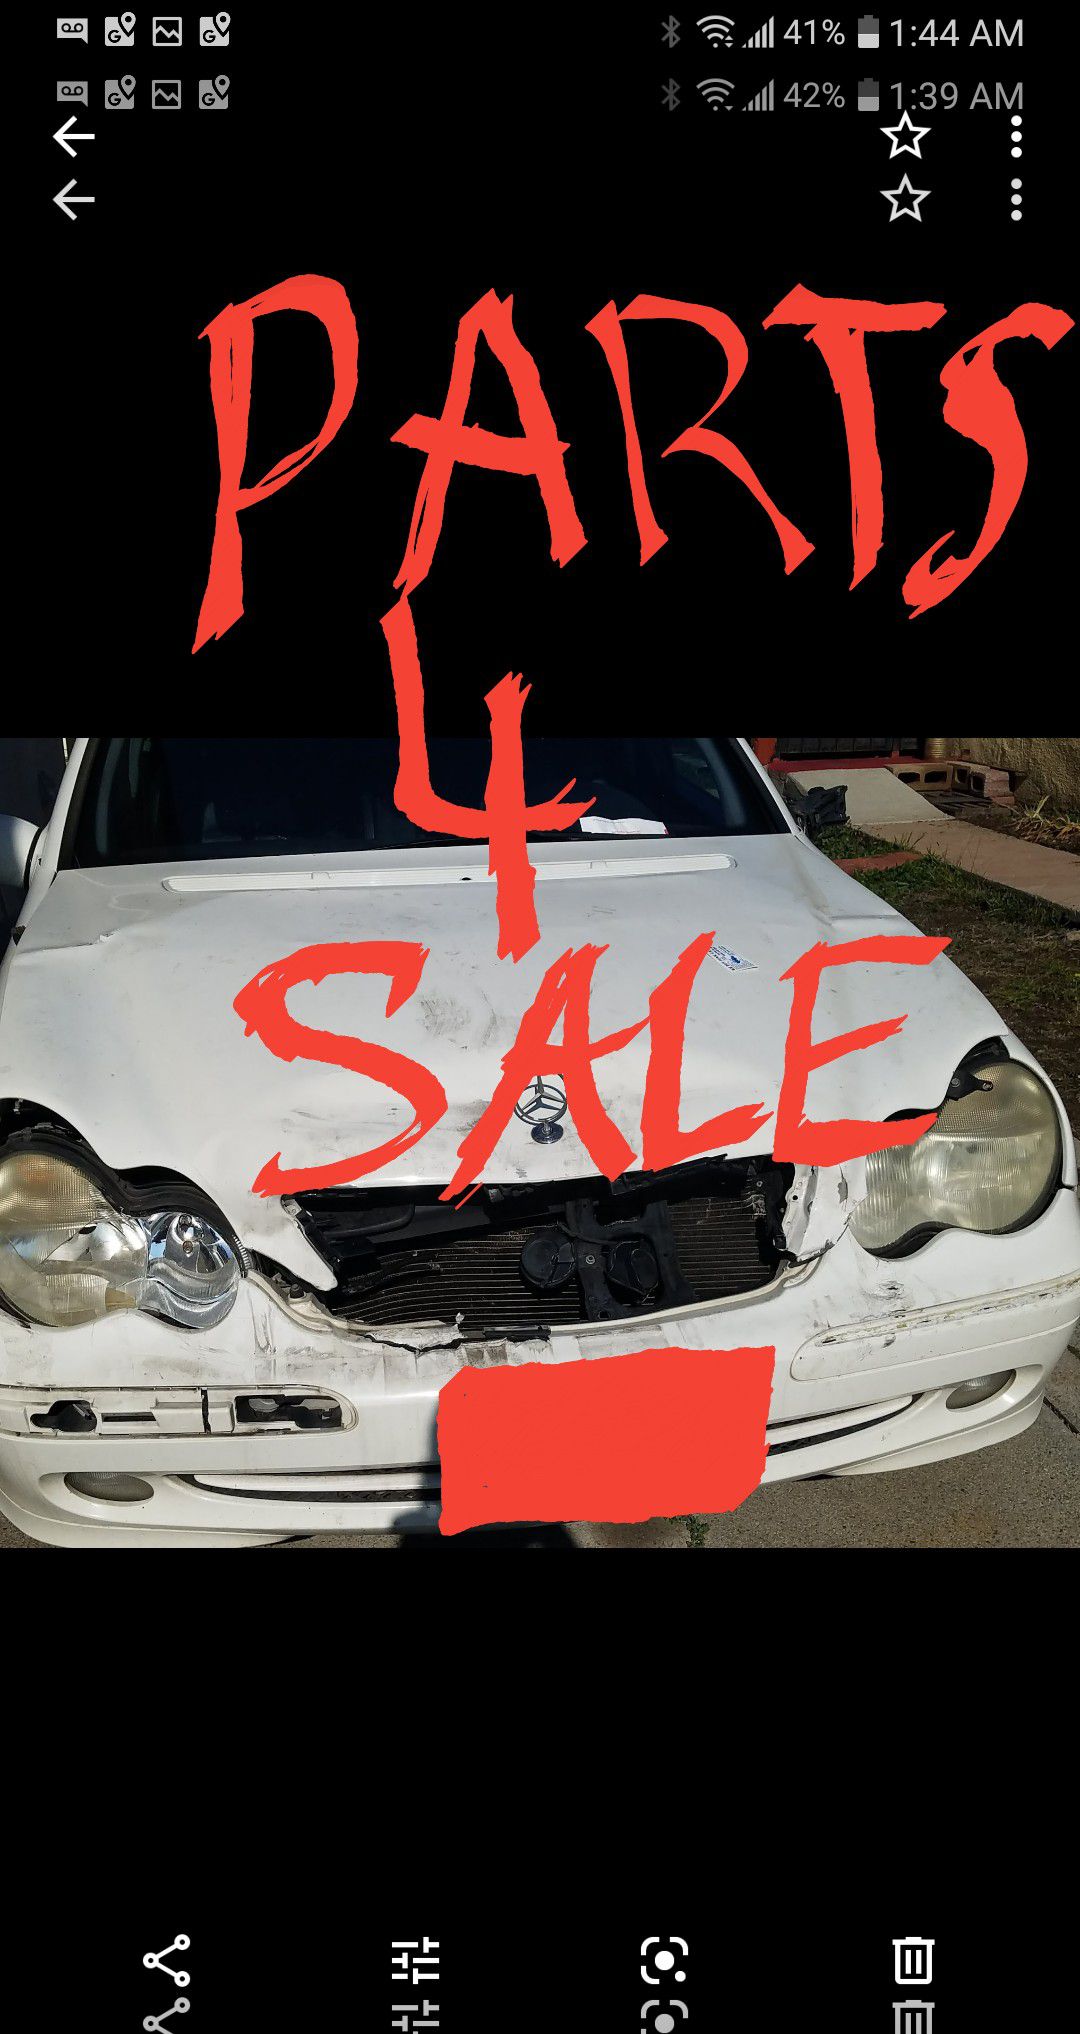 Mercedes-Benz parts for sale